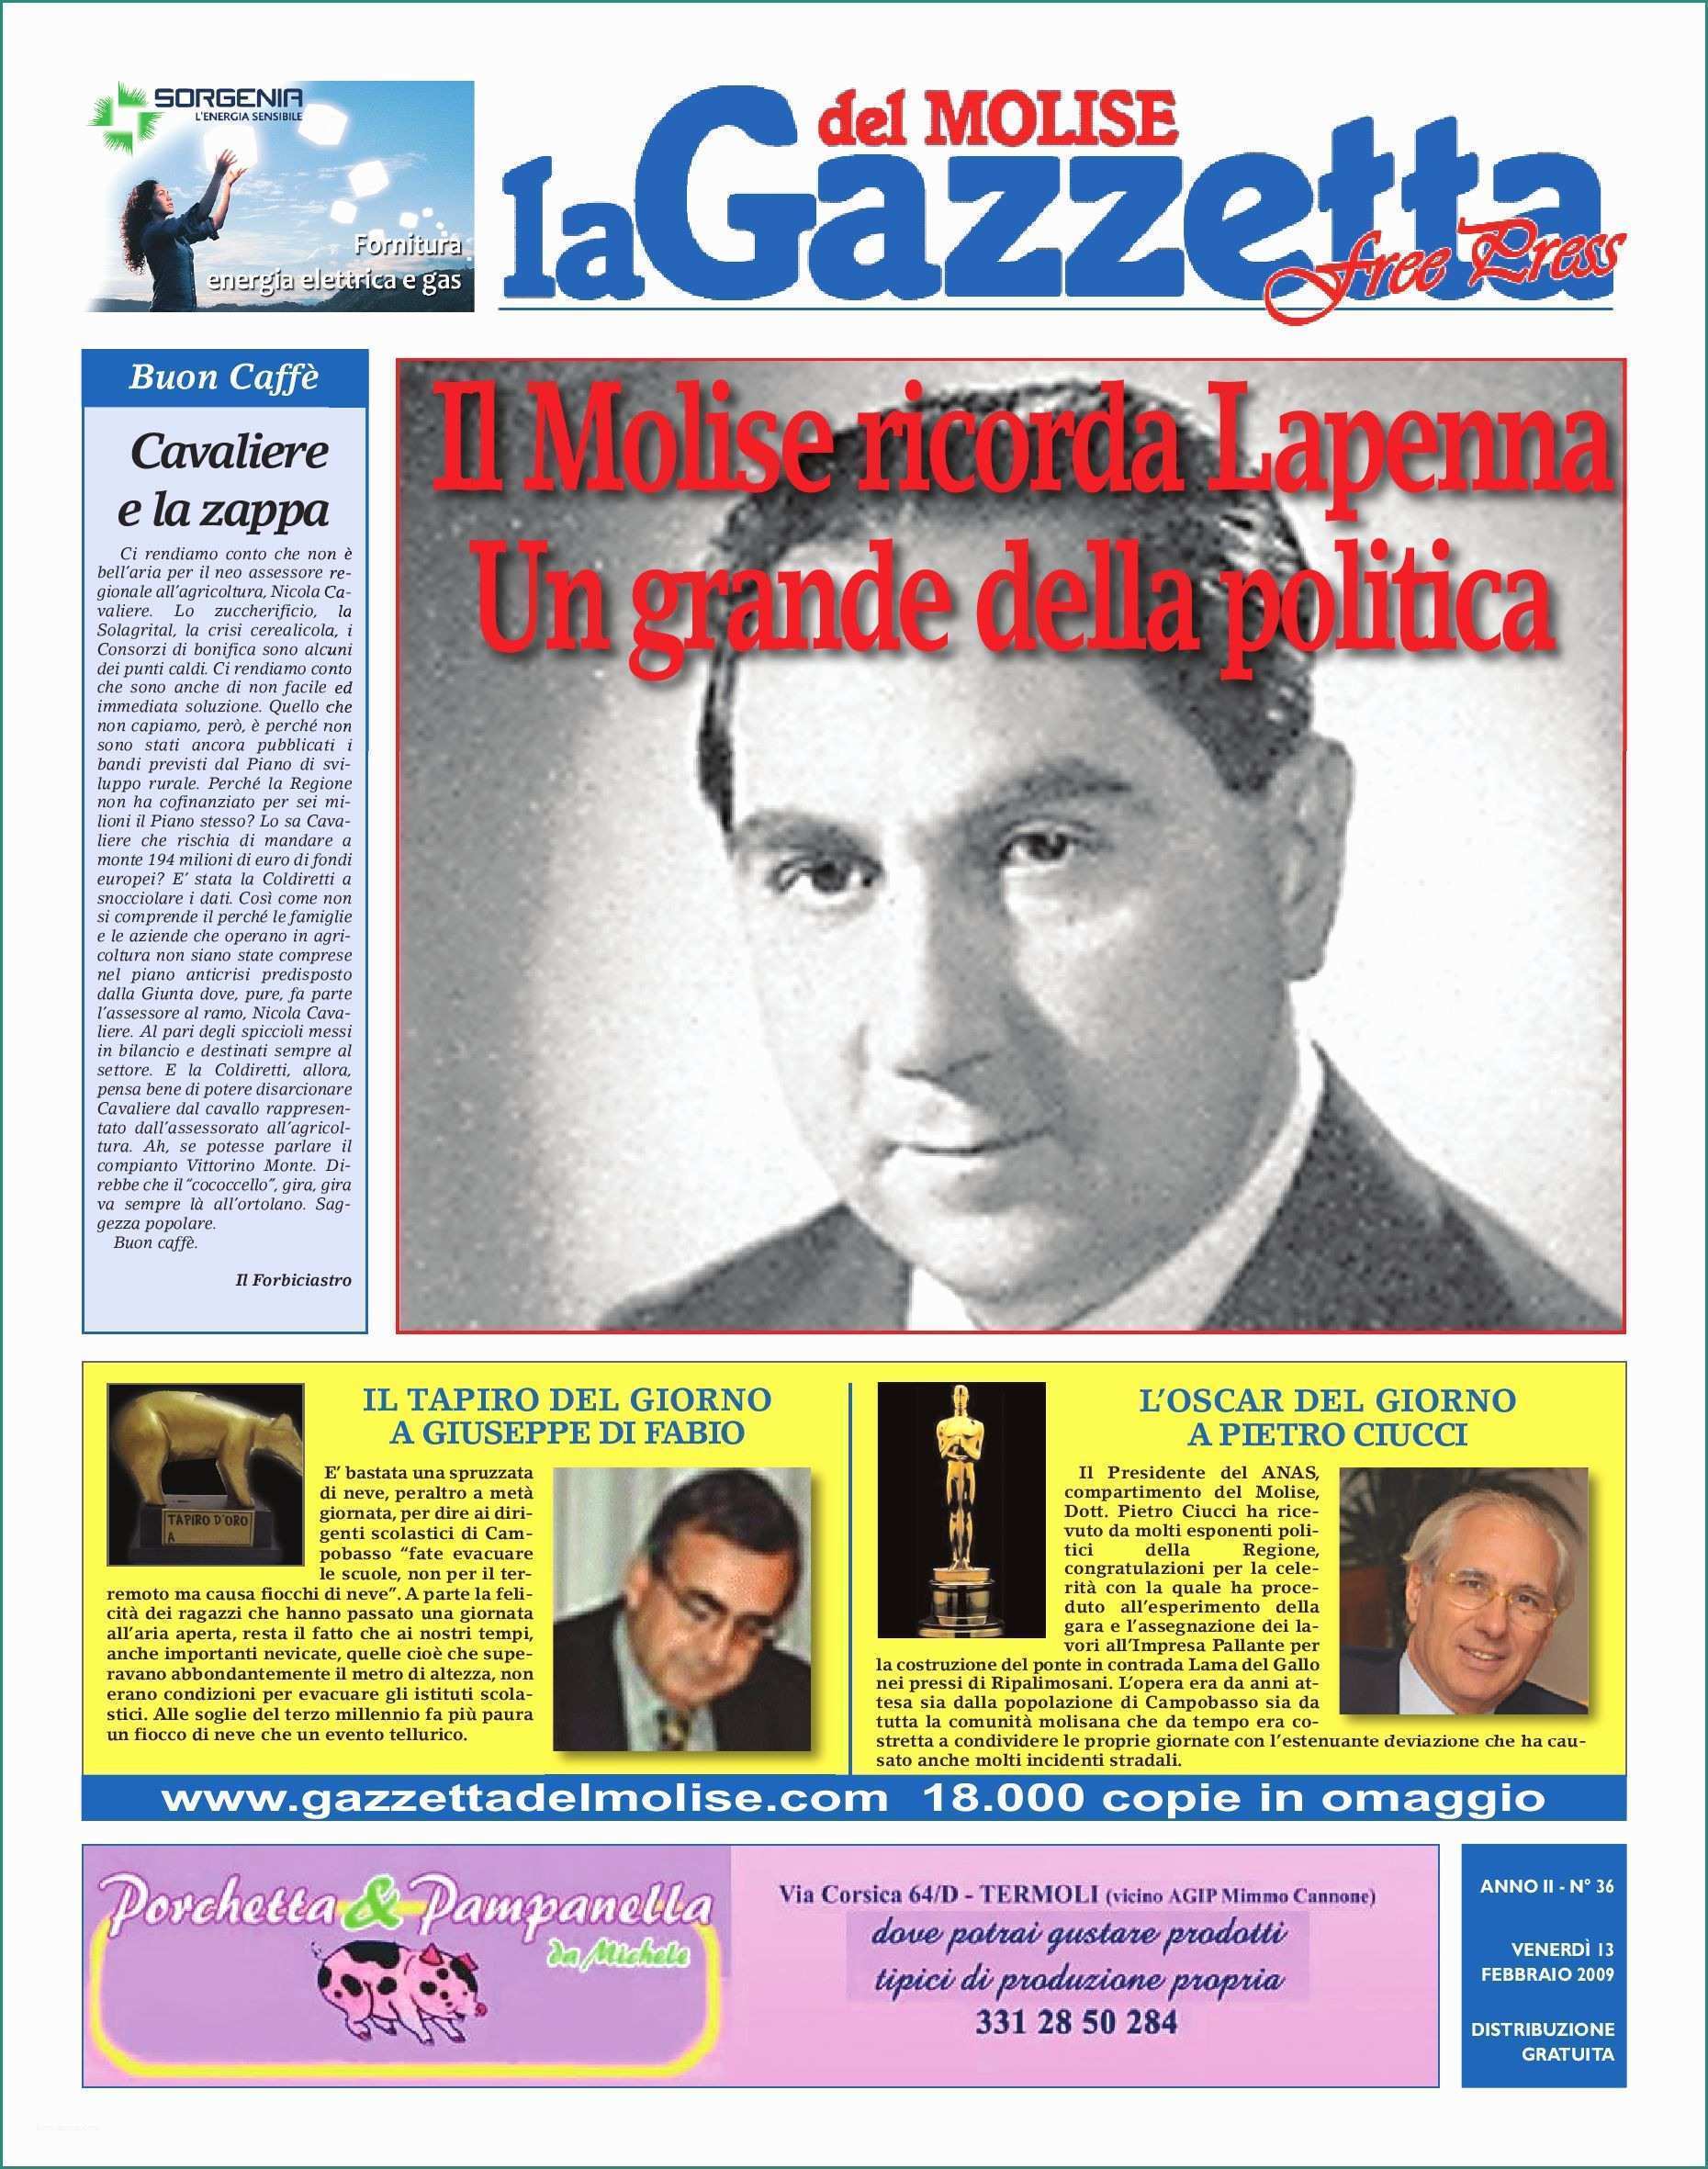 Cabala Significato Dei sogni E La Gazzetta Del Molise Free Press 13 02 2009 by Gazzetta Del